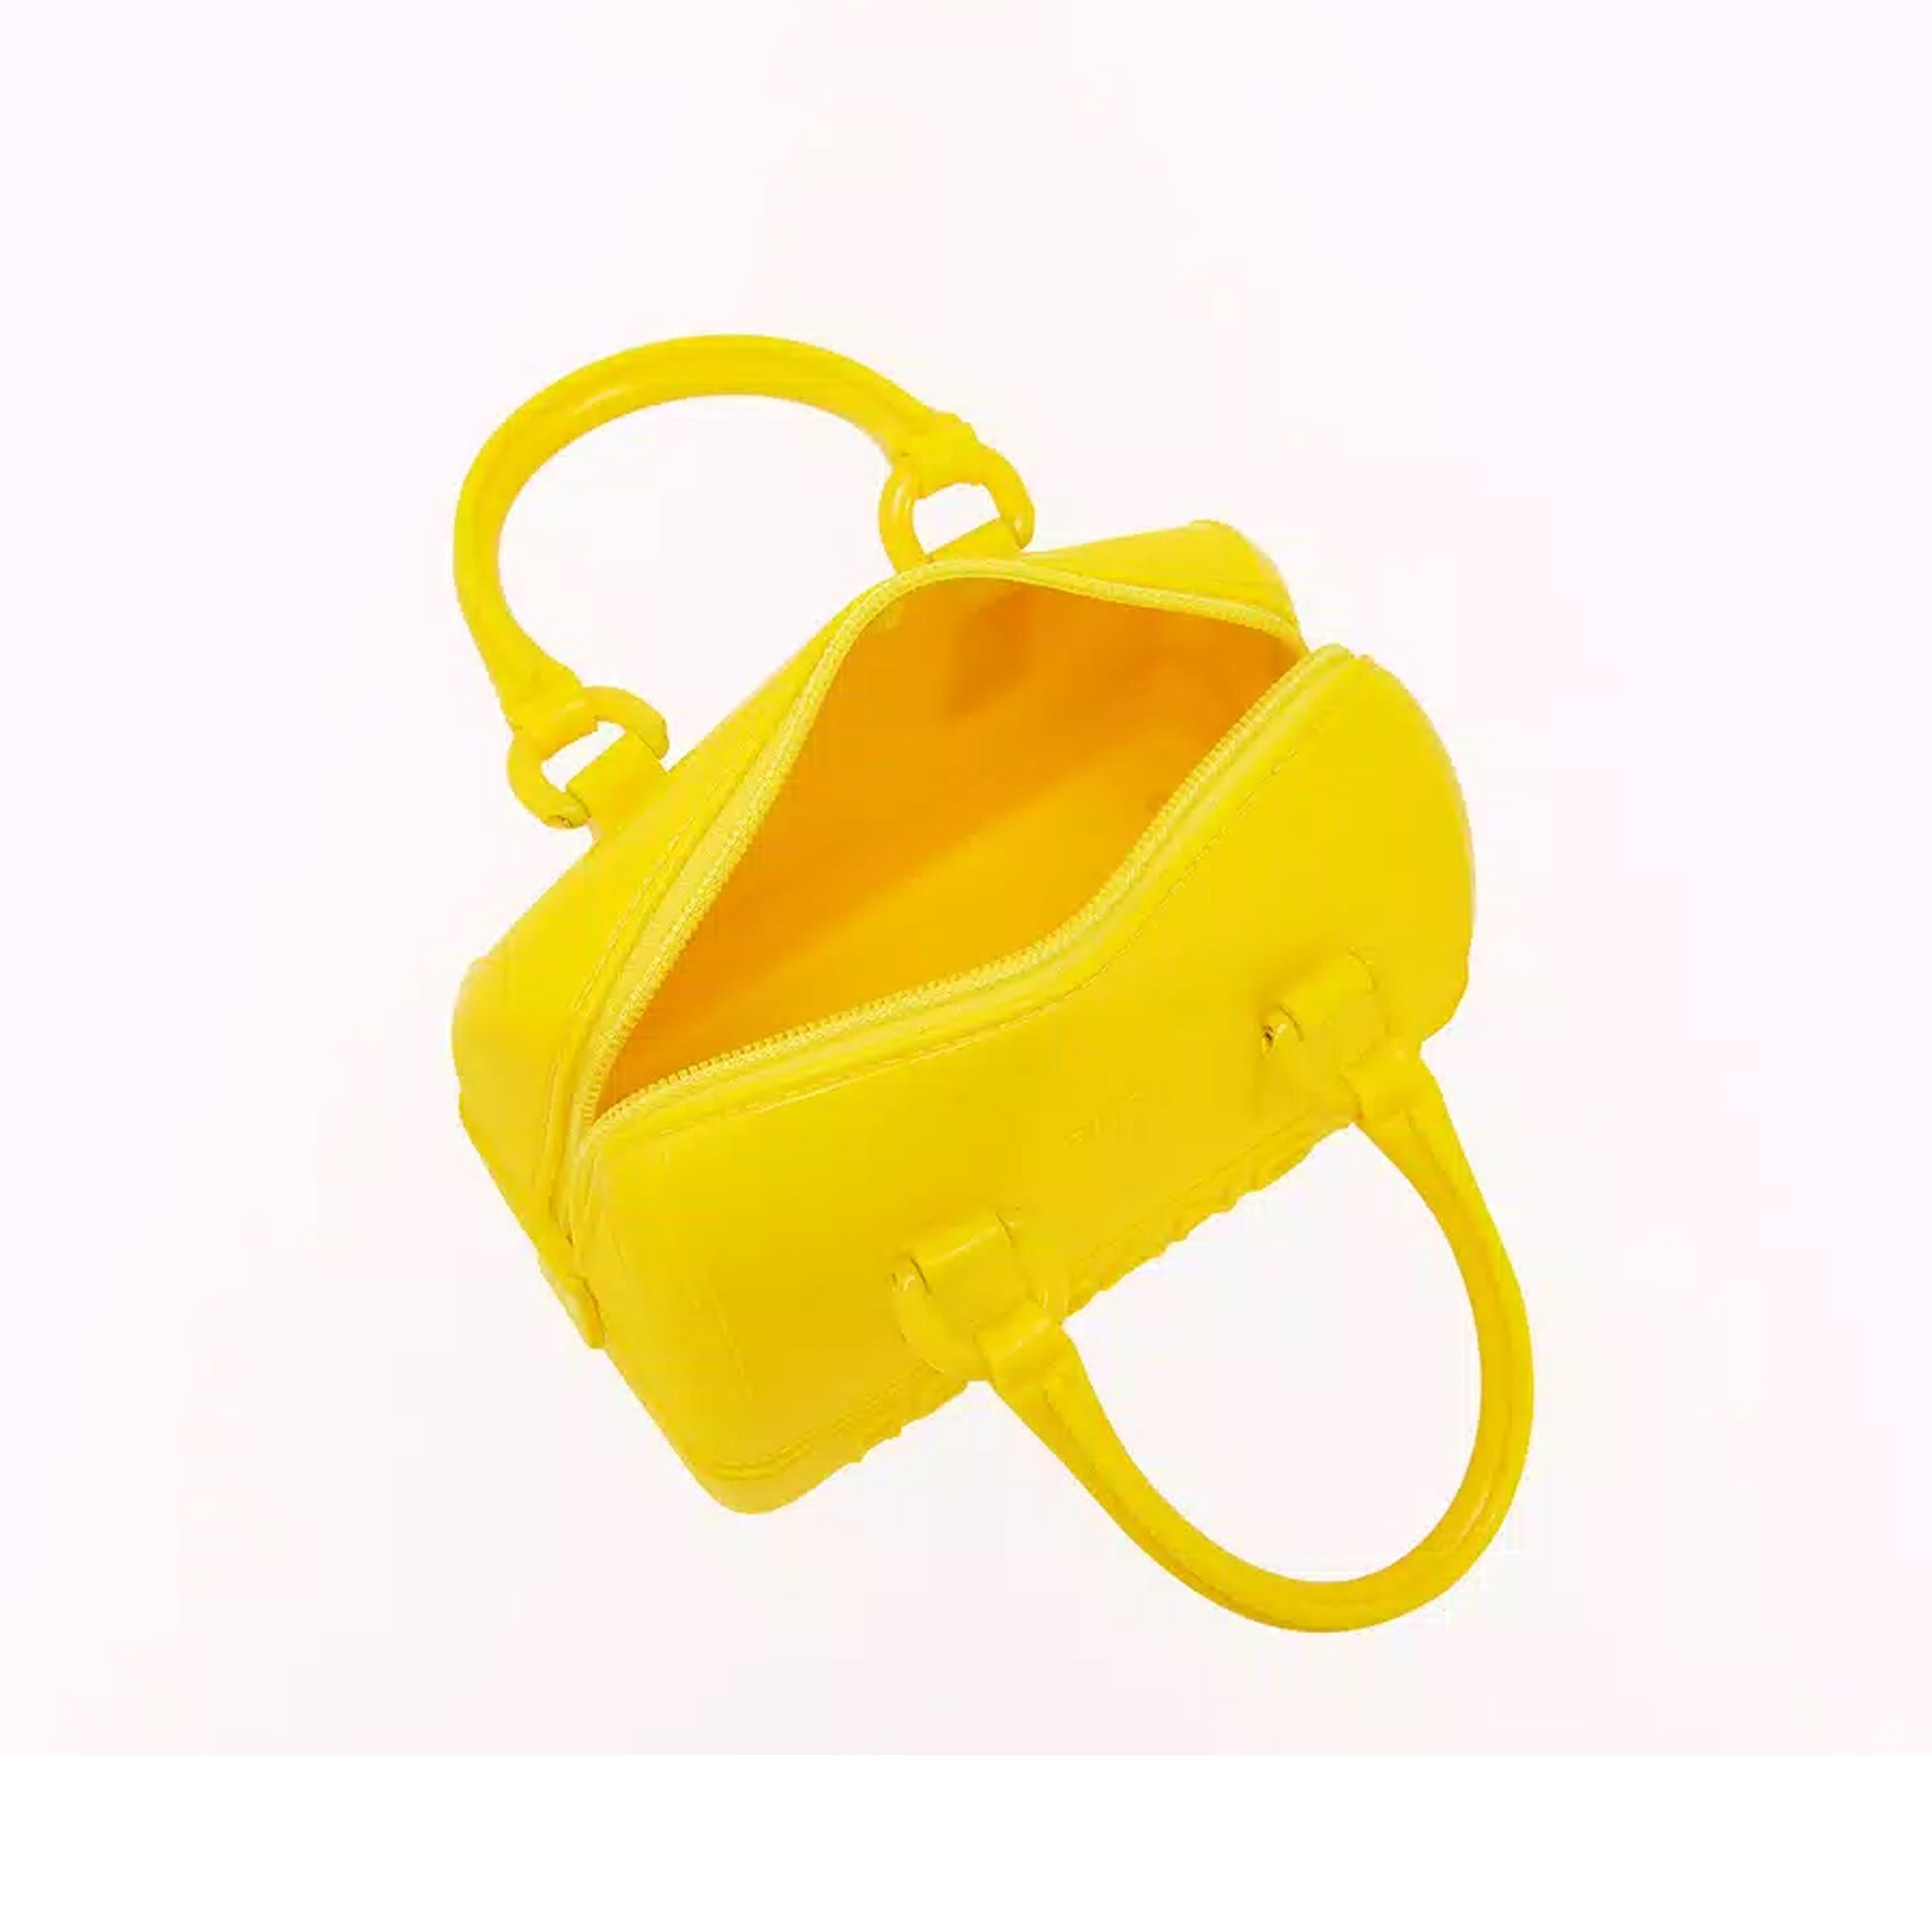 Furla Candy Cyber Yellow Mini Boston Bag